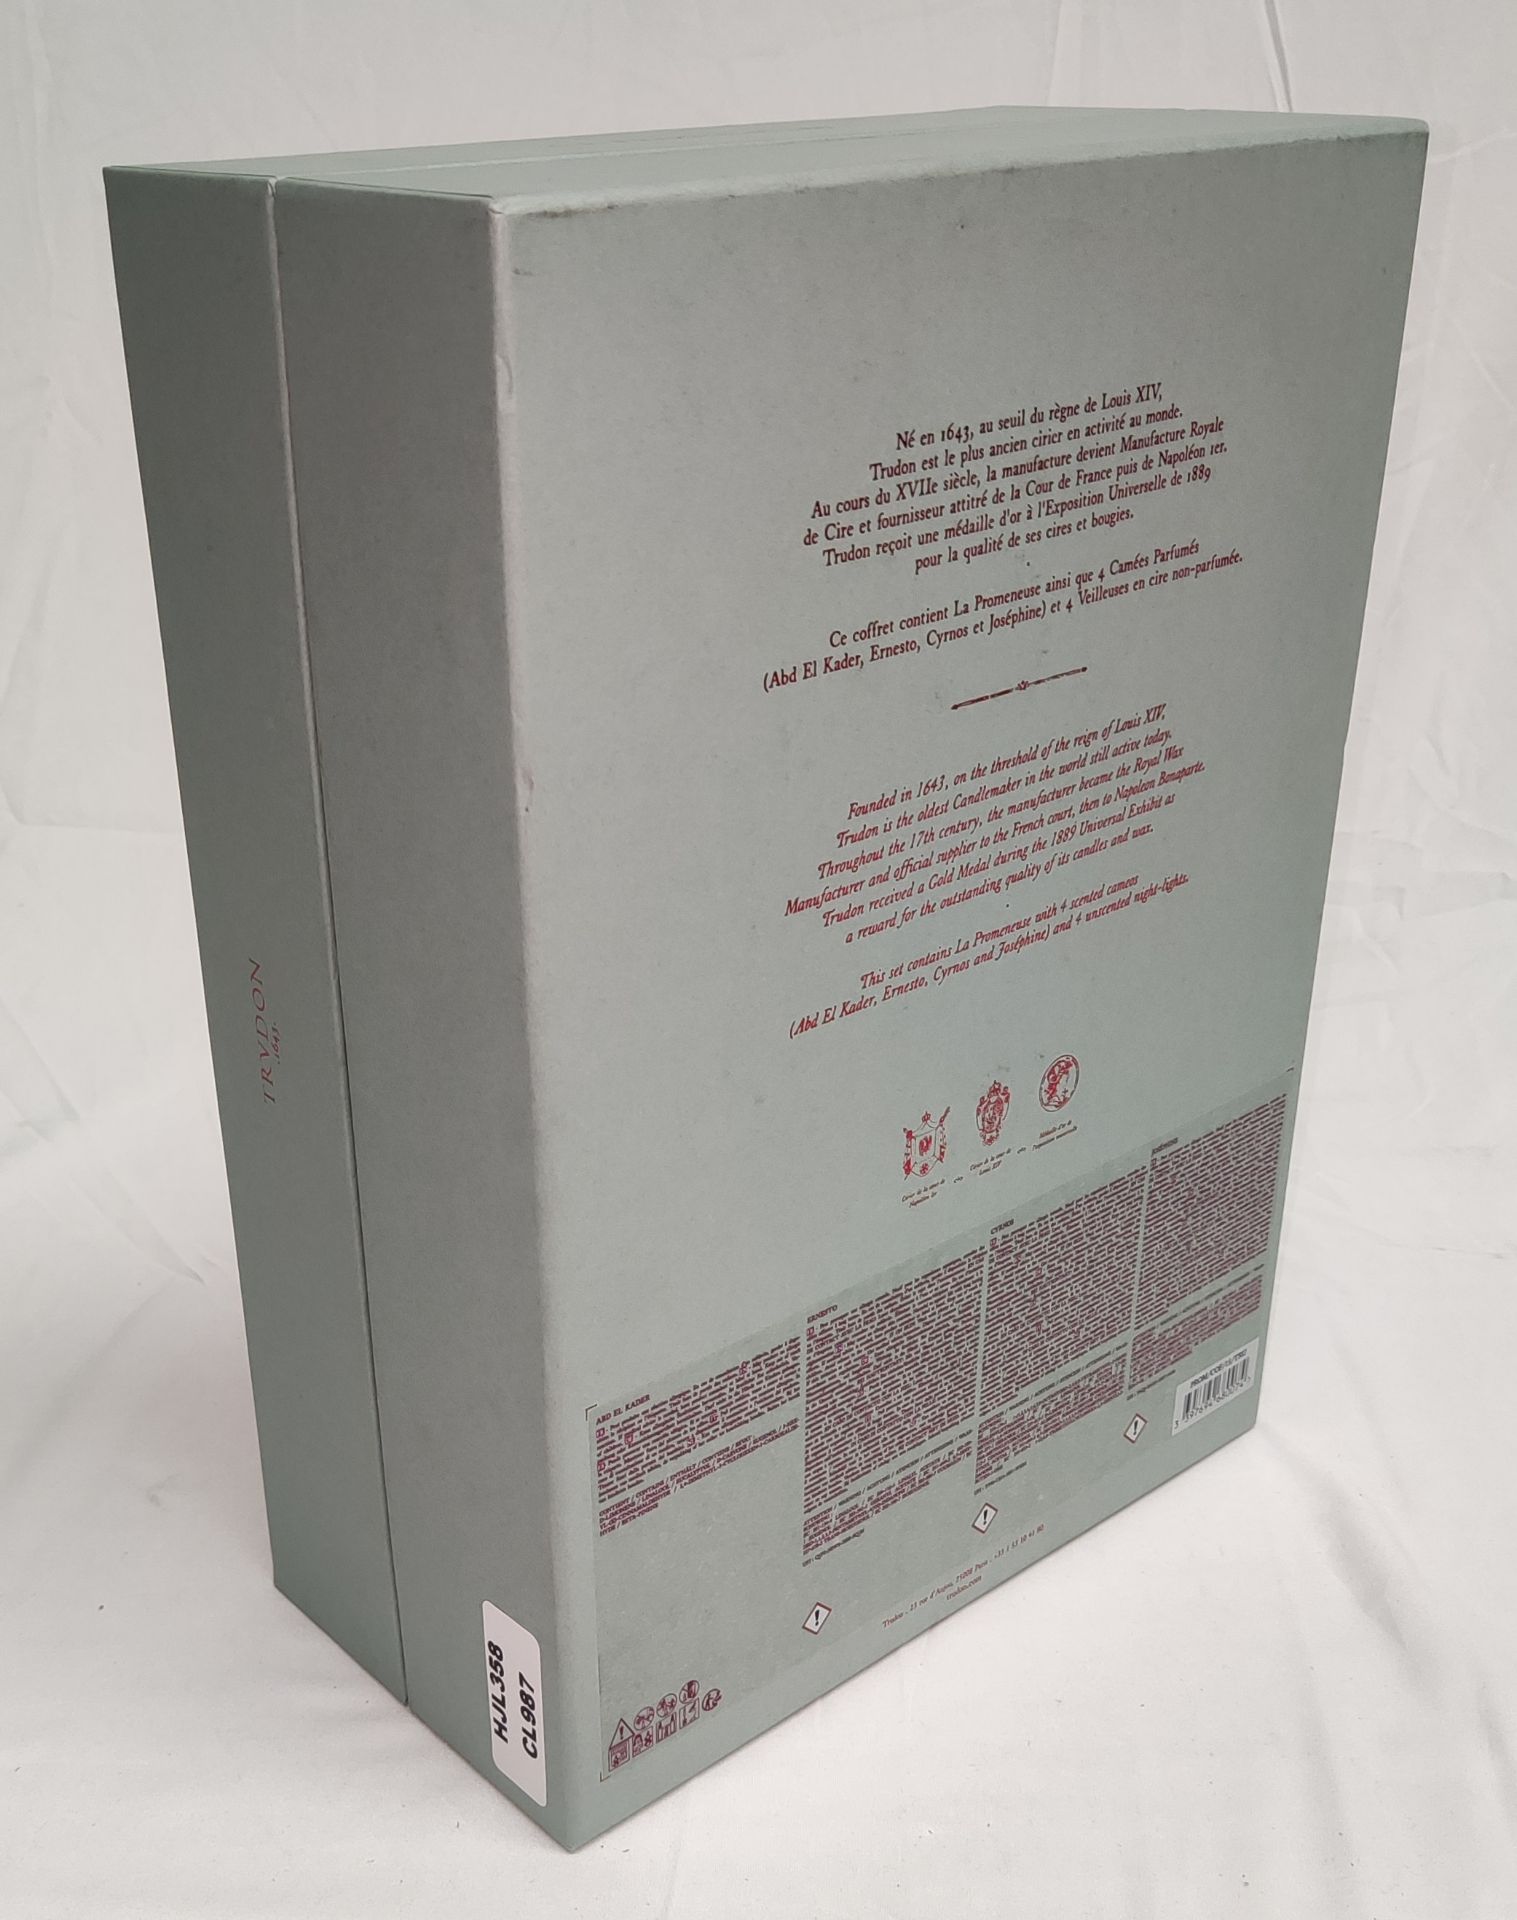 1 x TRUDON La Promeneuse Glass Diffuser - Boxed - Original RRP £320 - Ref: 5211353/HJL358/C19/07- - Image 12 of 16